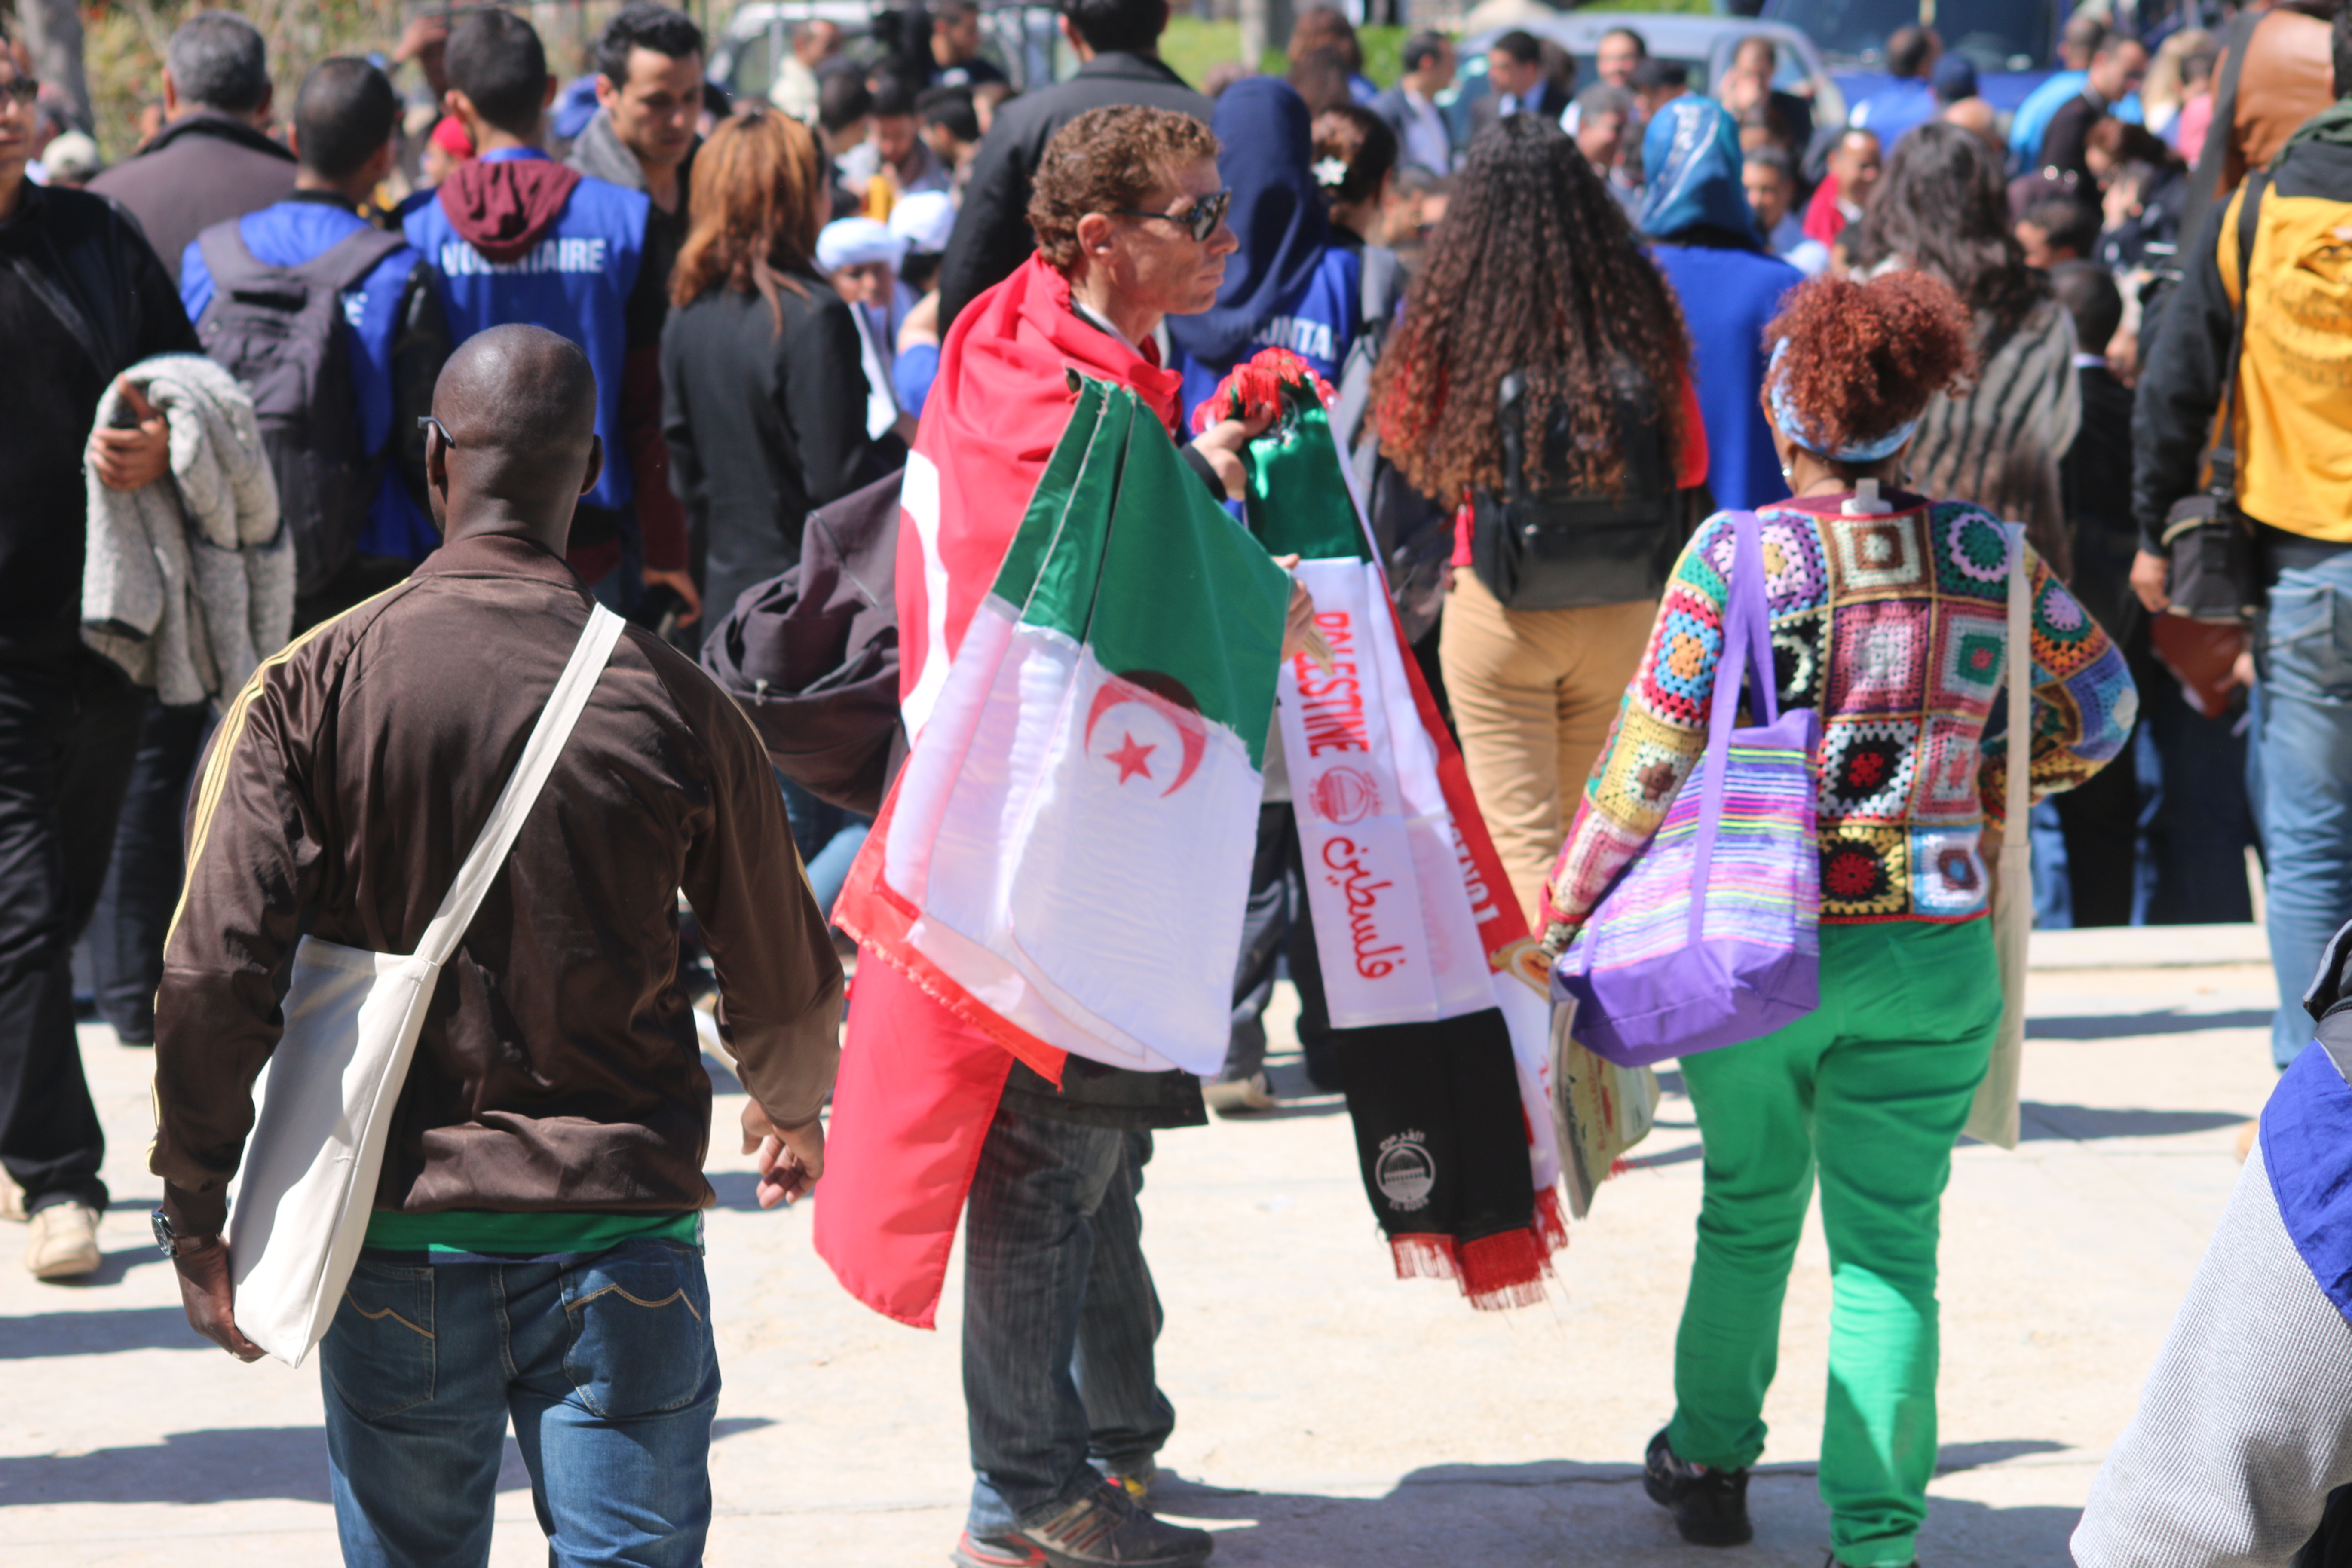 FSM Tunis 2015 : Journée maghrébine sous tension hier, des participants agressés par la délégation officielle algérienne.